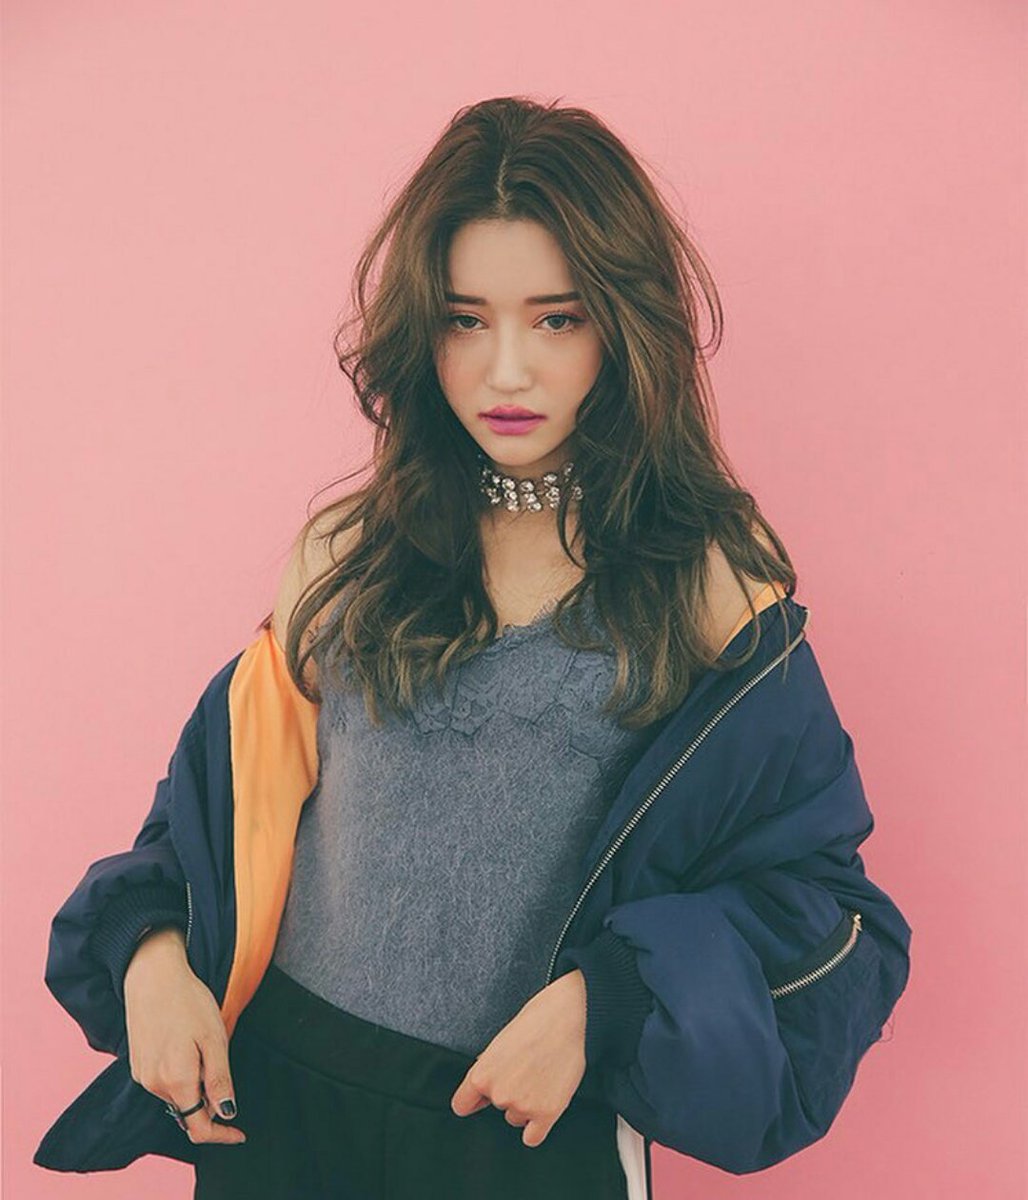 韓国の女性モデル かわいいランキングtop 最新版 Rank1 ランク1 人気ランキングまとめサイト 国内最大級